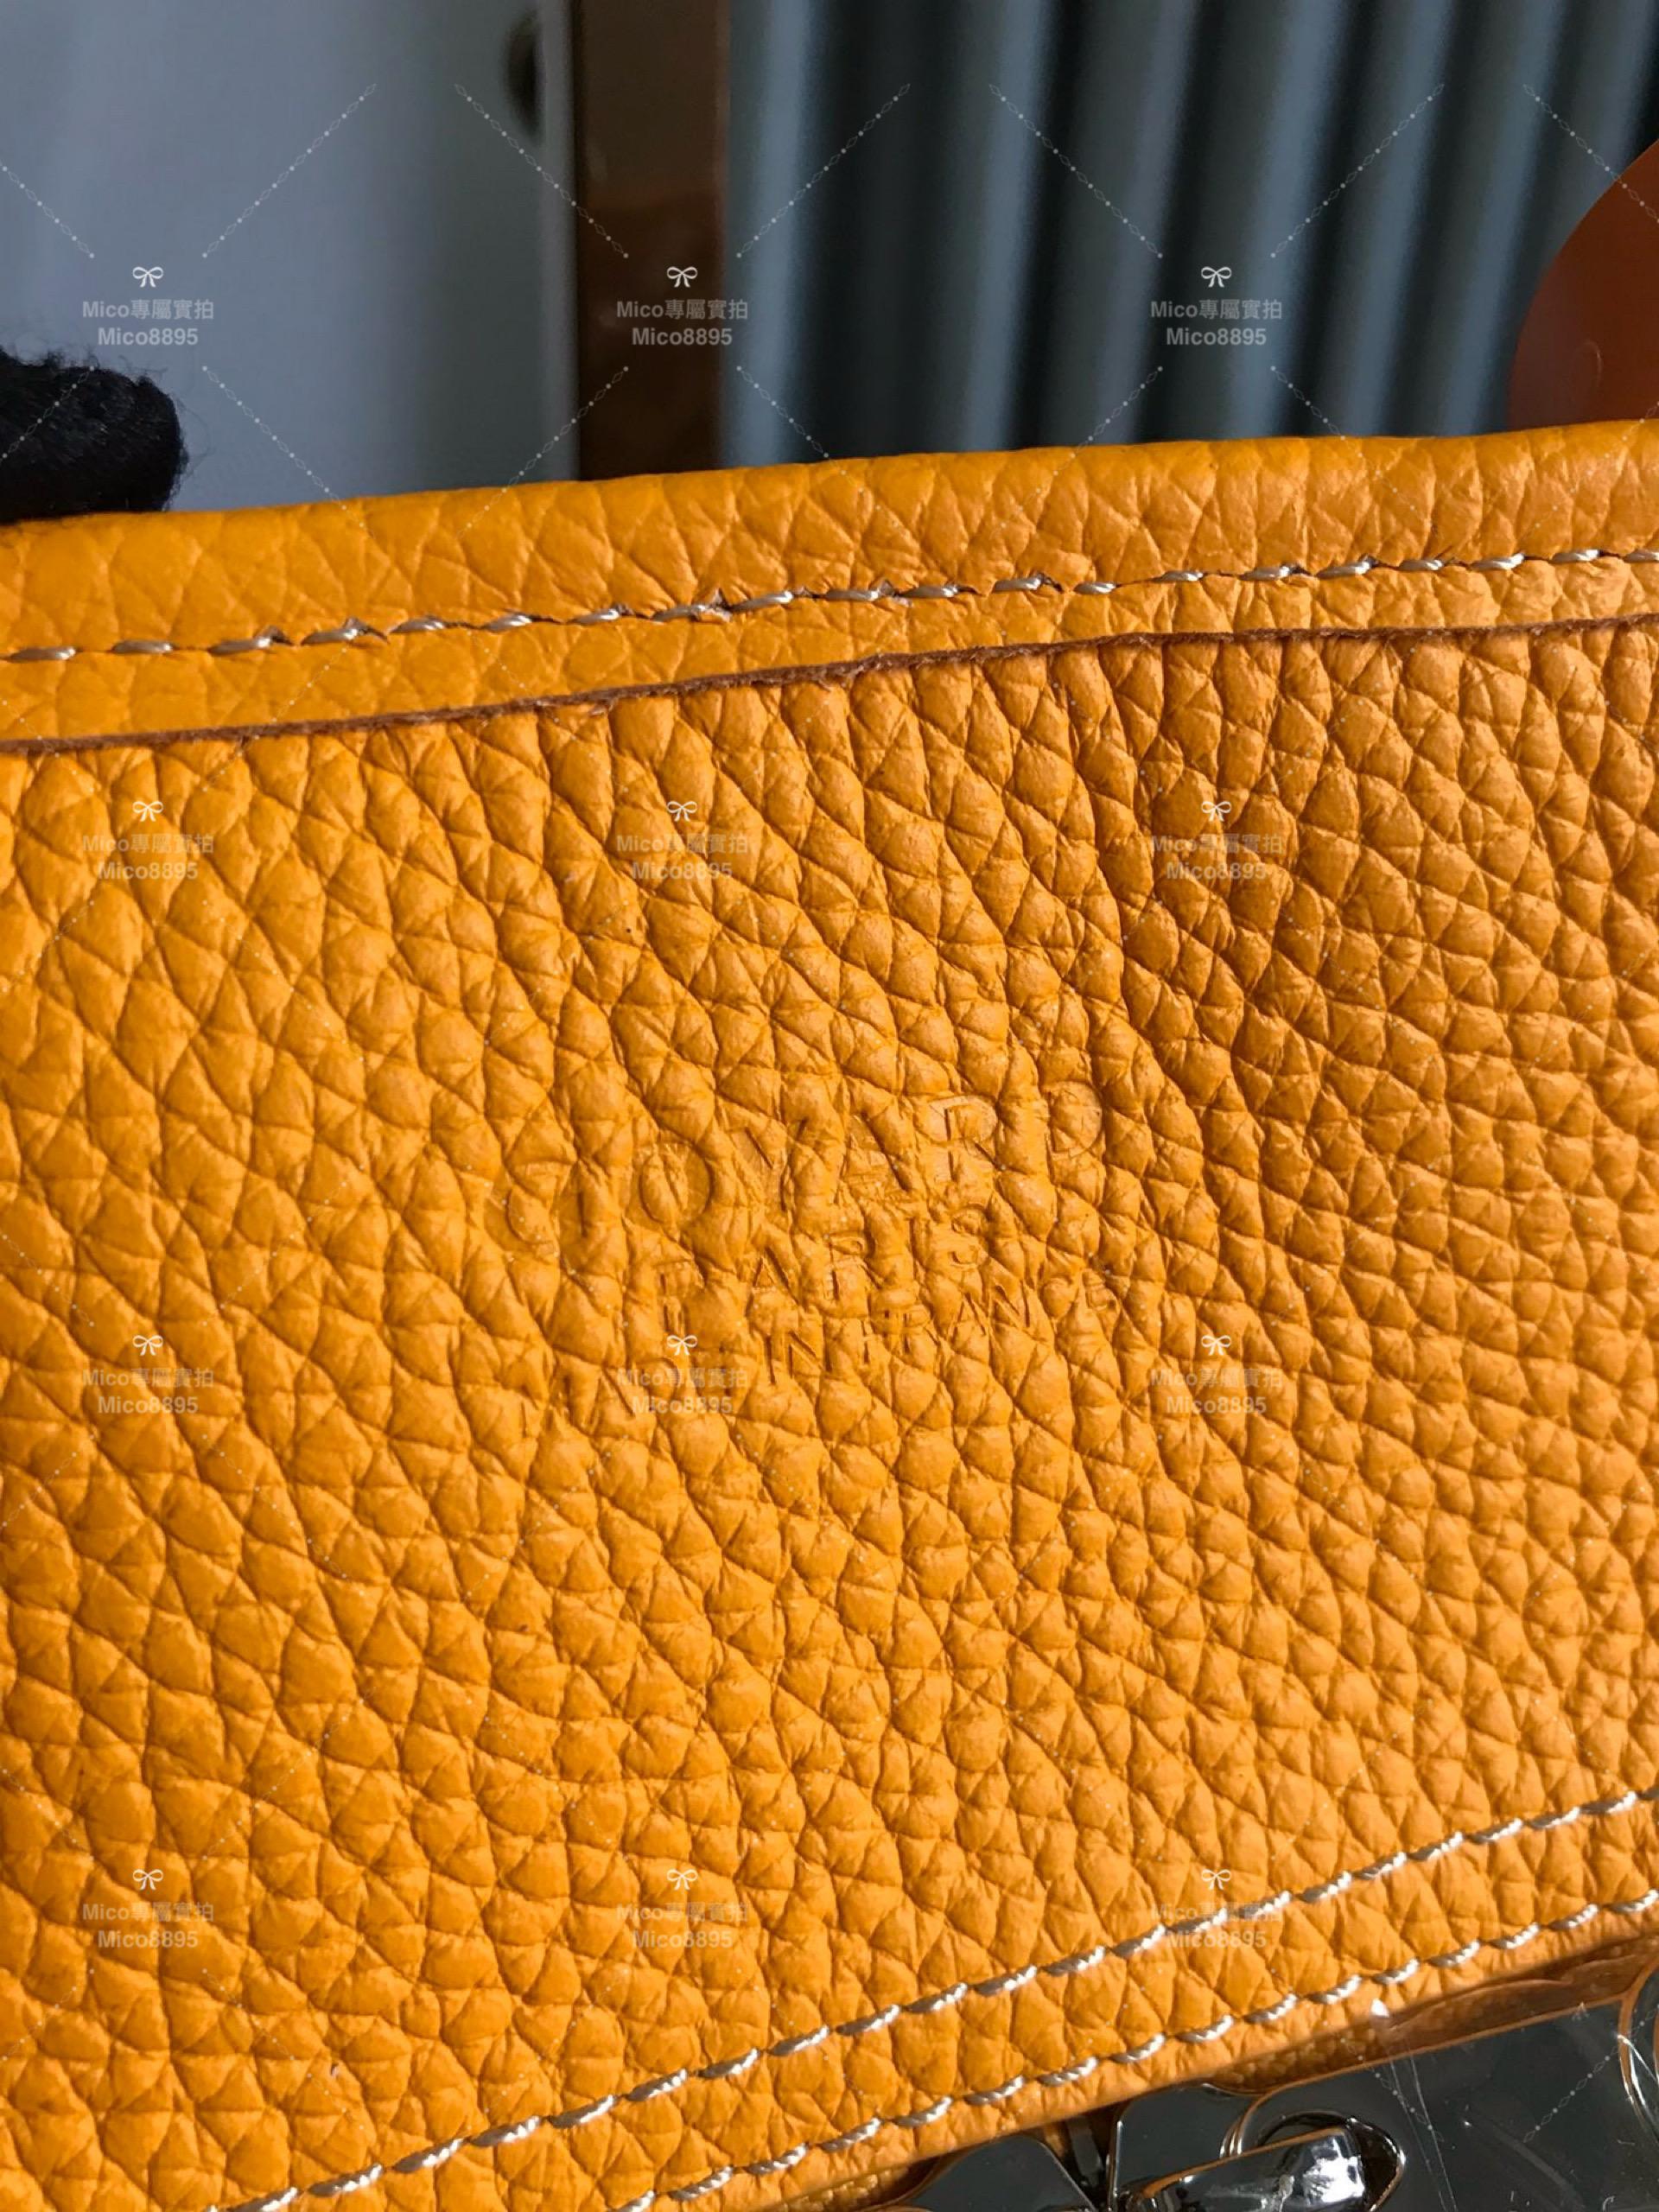 Goyard 黃色 hardy bag 購物袋/旅行包/寵物包